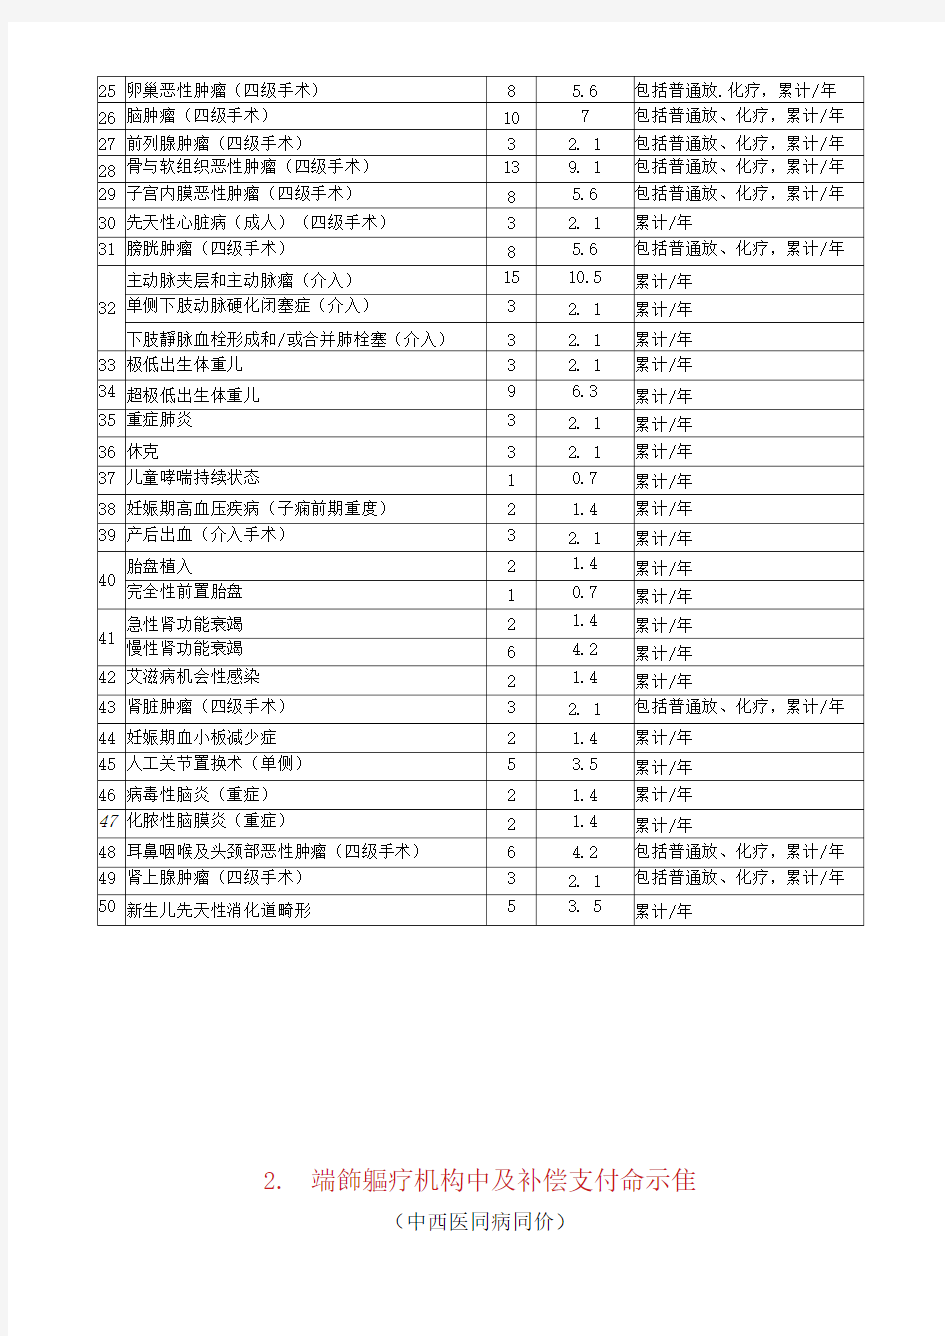 双向转诊---甘肃省乡级医疗机构分级诊疗病种目录及补偿标准